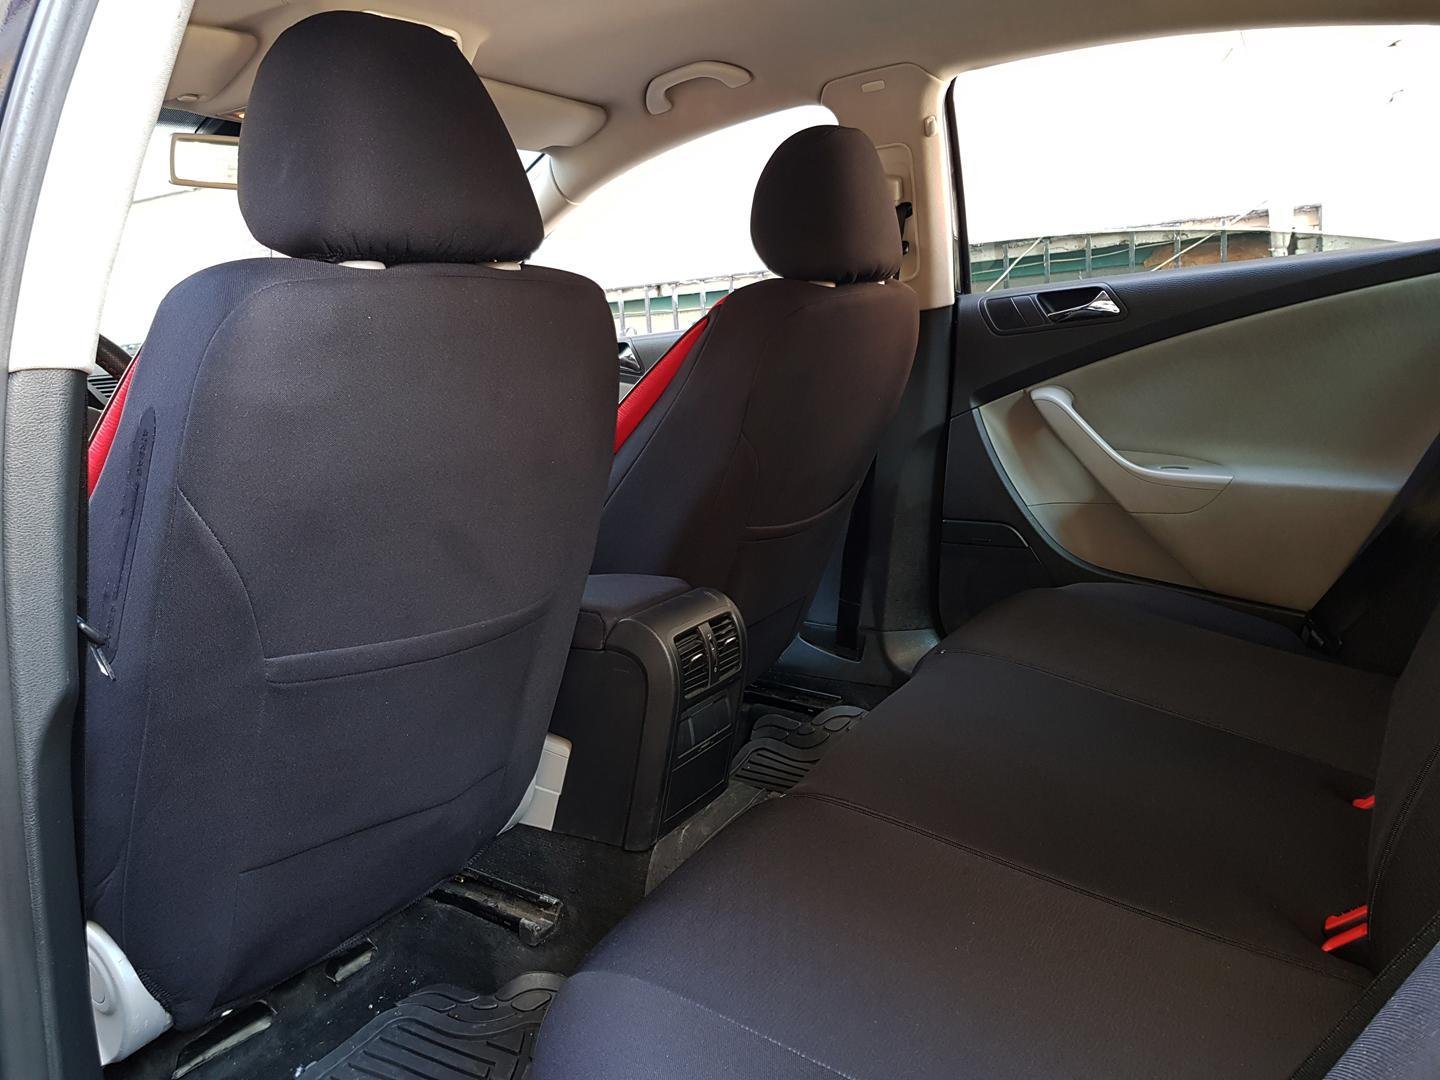 Car Seat Covers Protectors Audi A1 Sportback 8x Black Red No25 Complete - Audi A1 Sportback Car Seat Covers